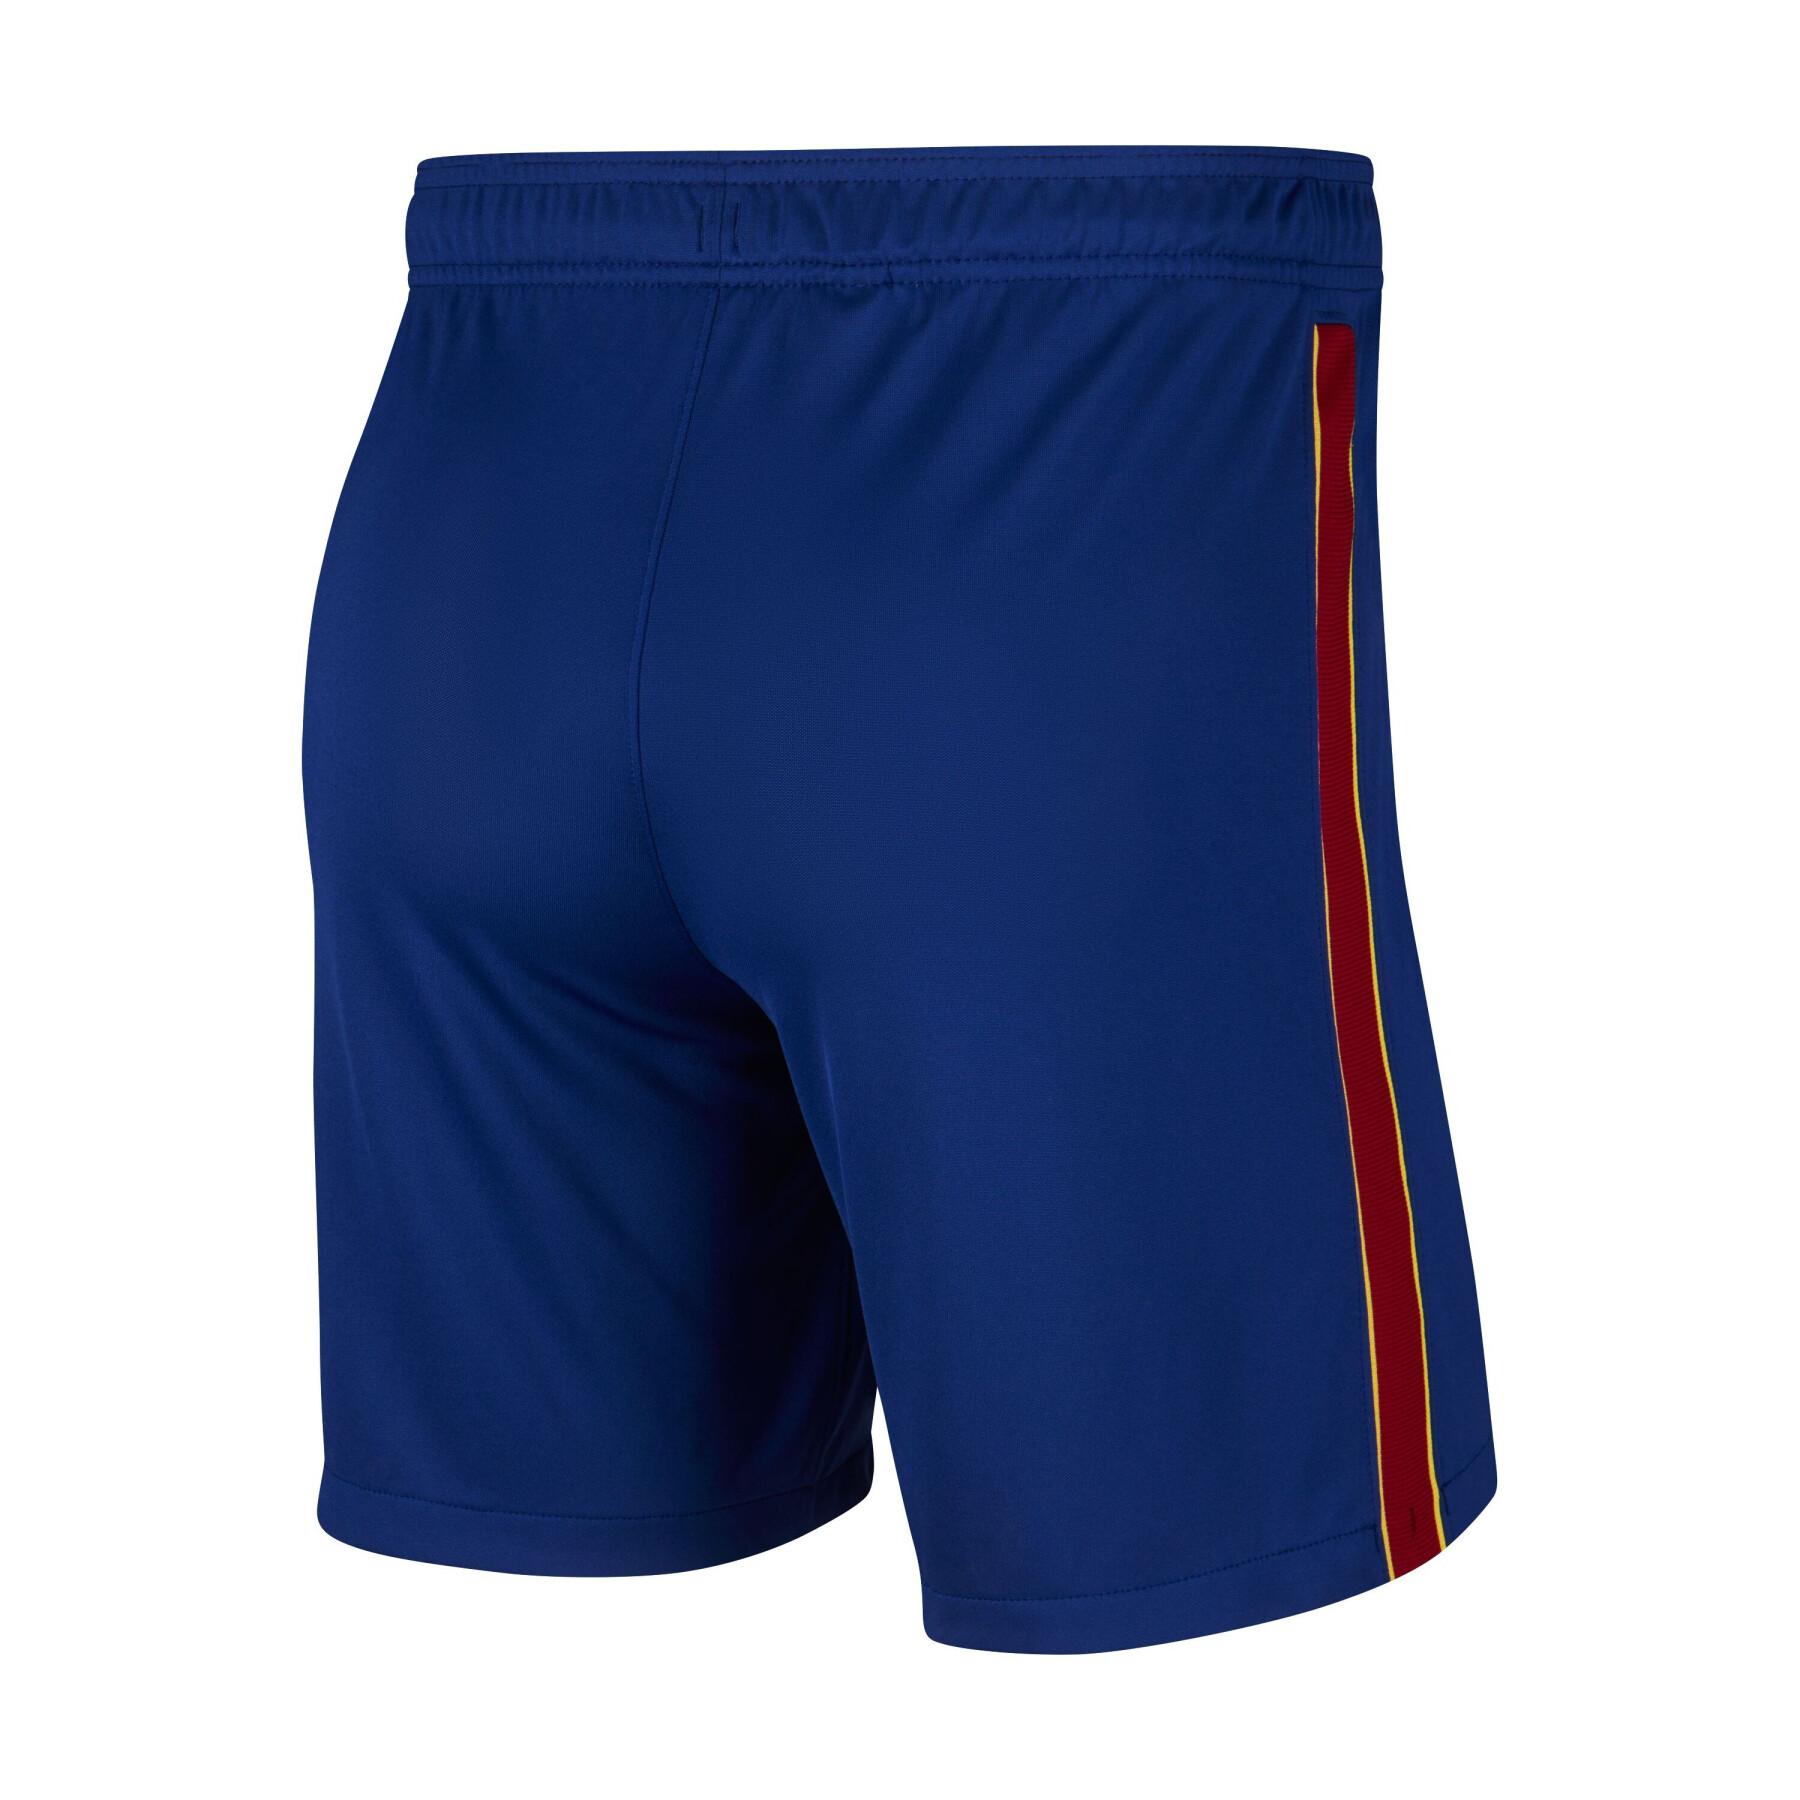 Pantalones cortos de Primera equipación del Barcelona 2020/21